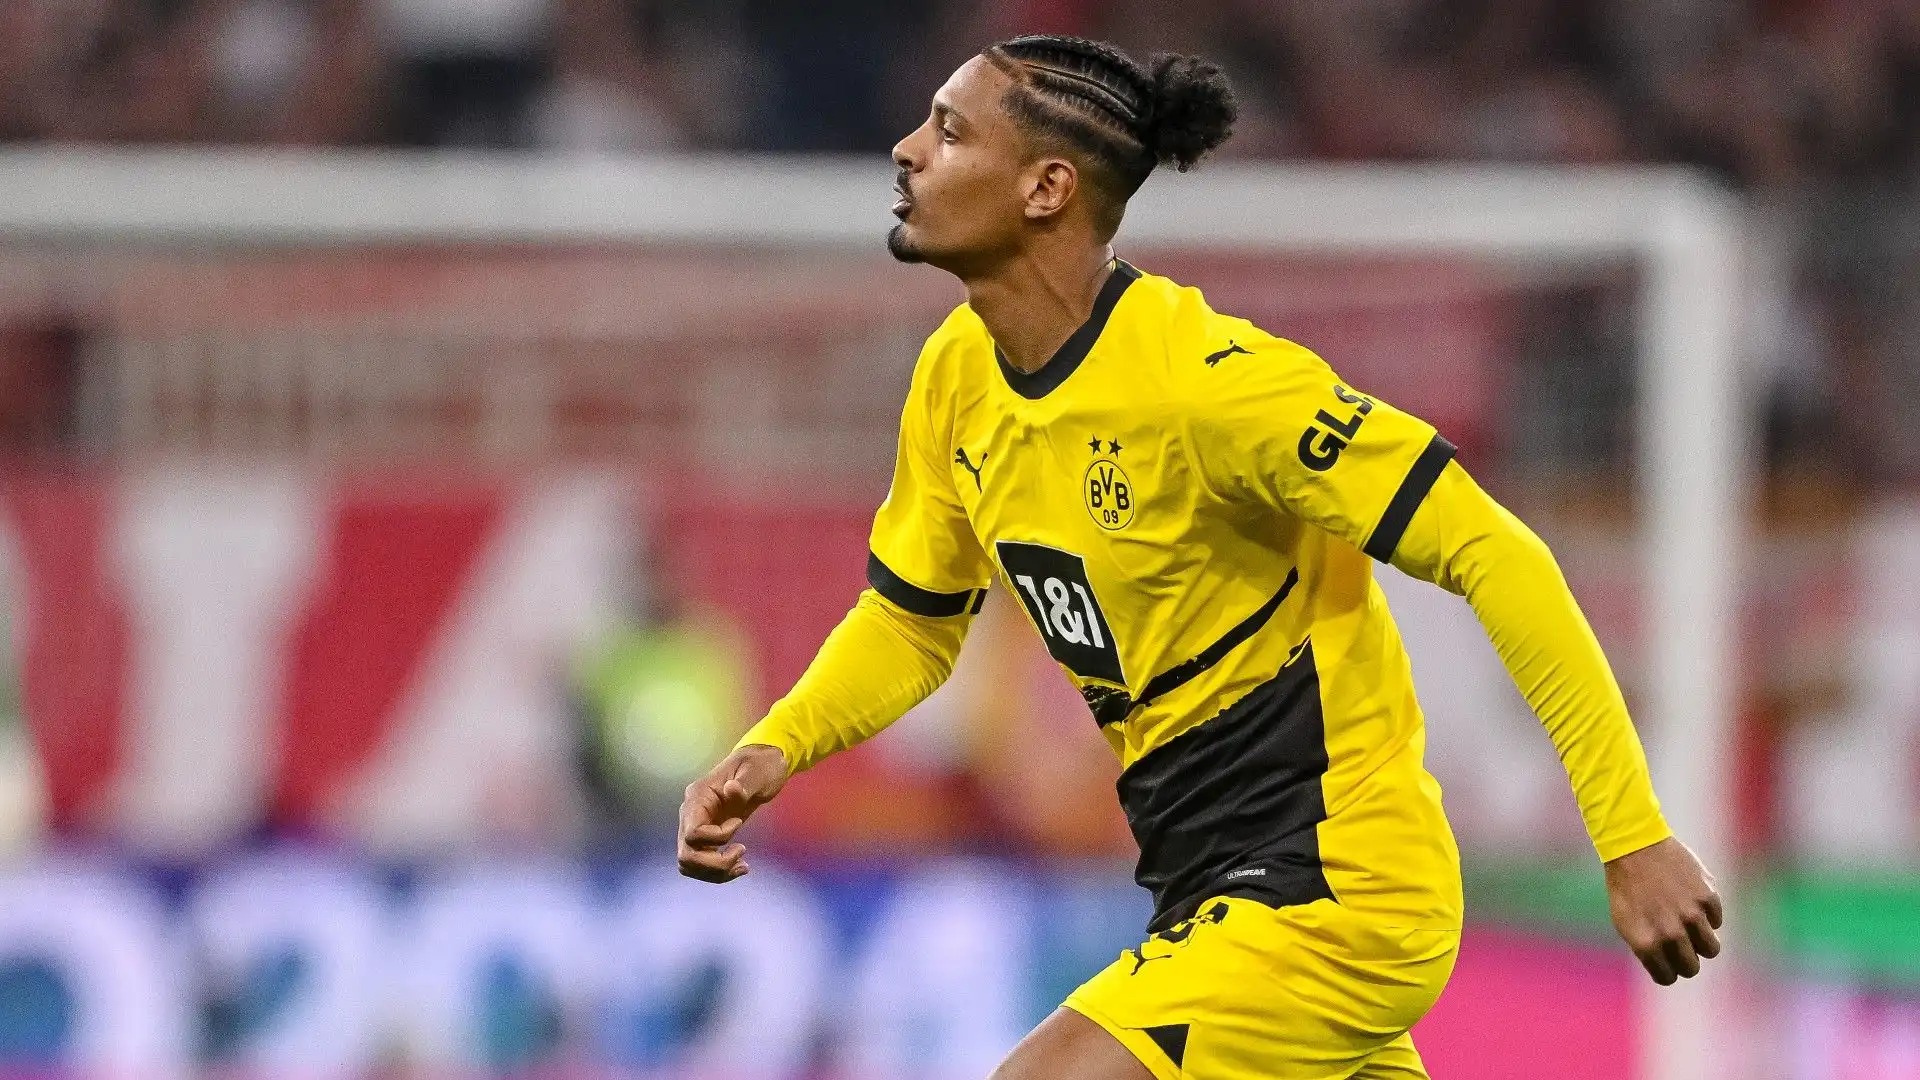 Il Borussia Dortmund spera si proponga qualche club della Saudi Pro League